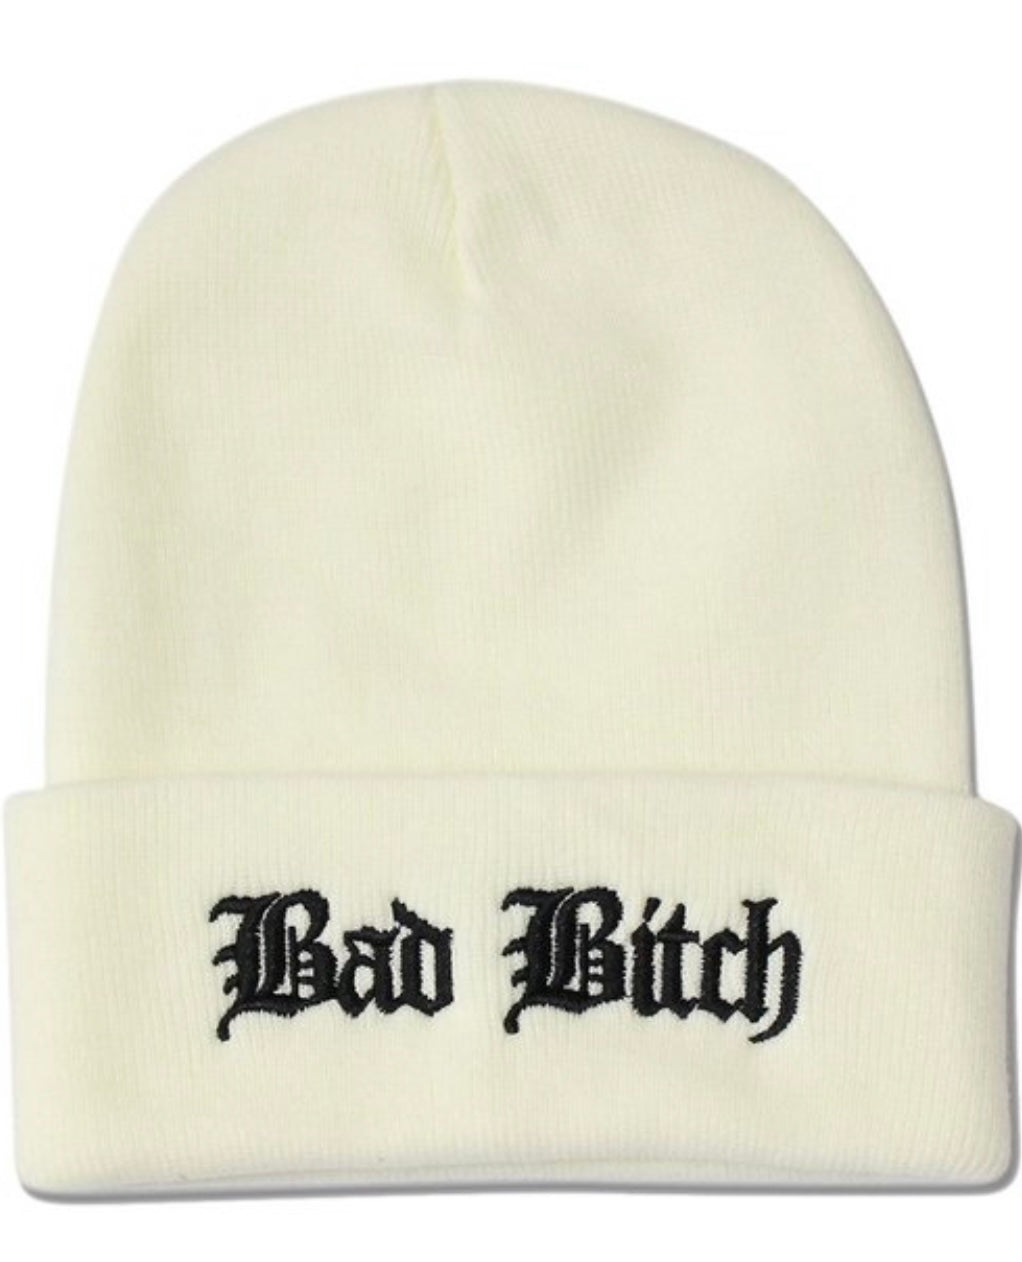 white hat, beenie, winter hat, bad bitch, bad bitch hat,